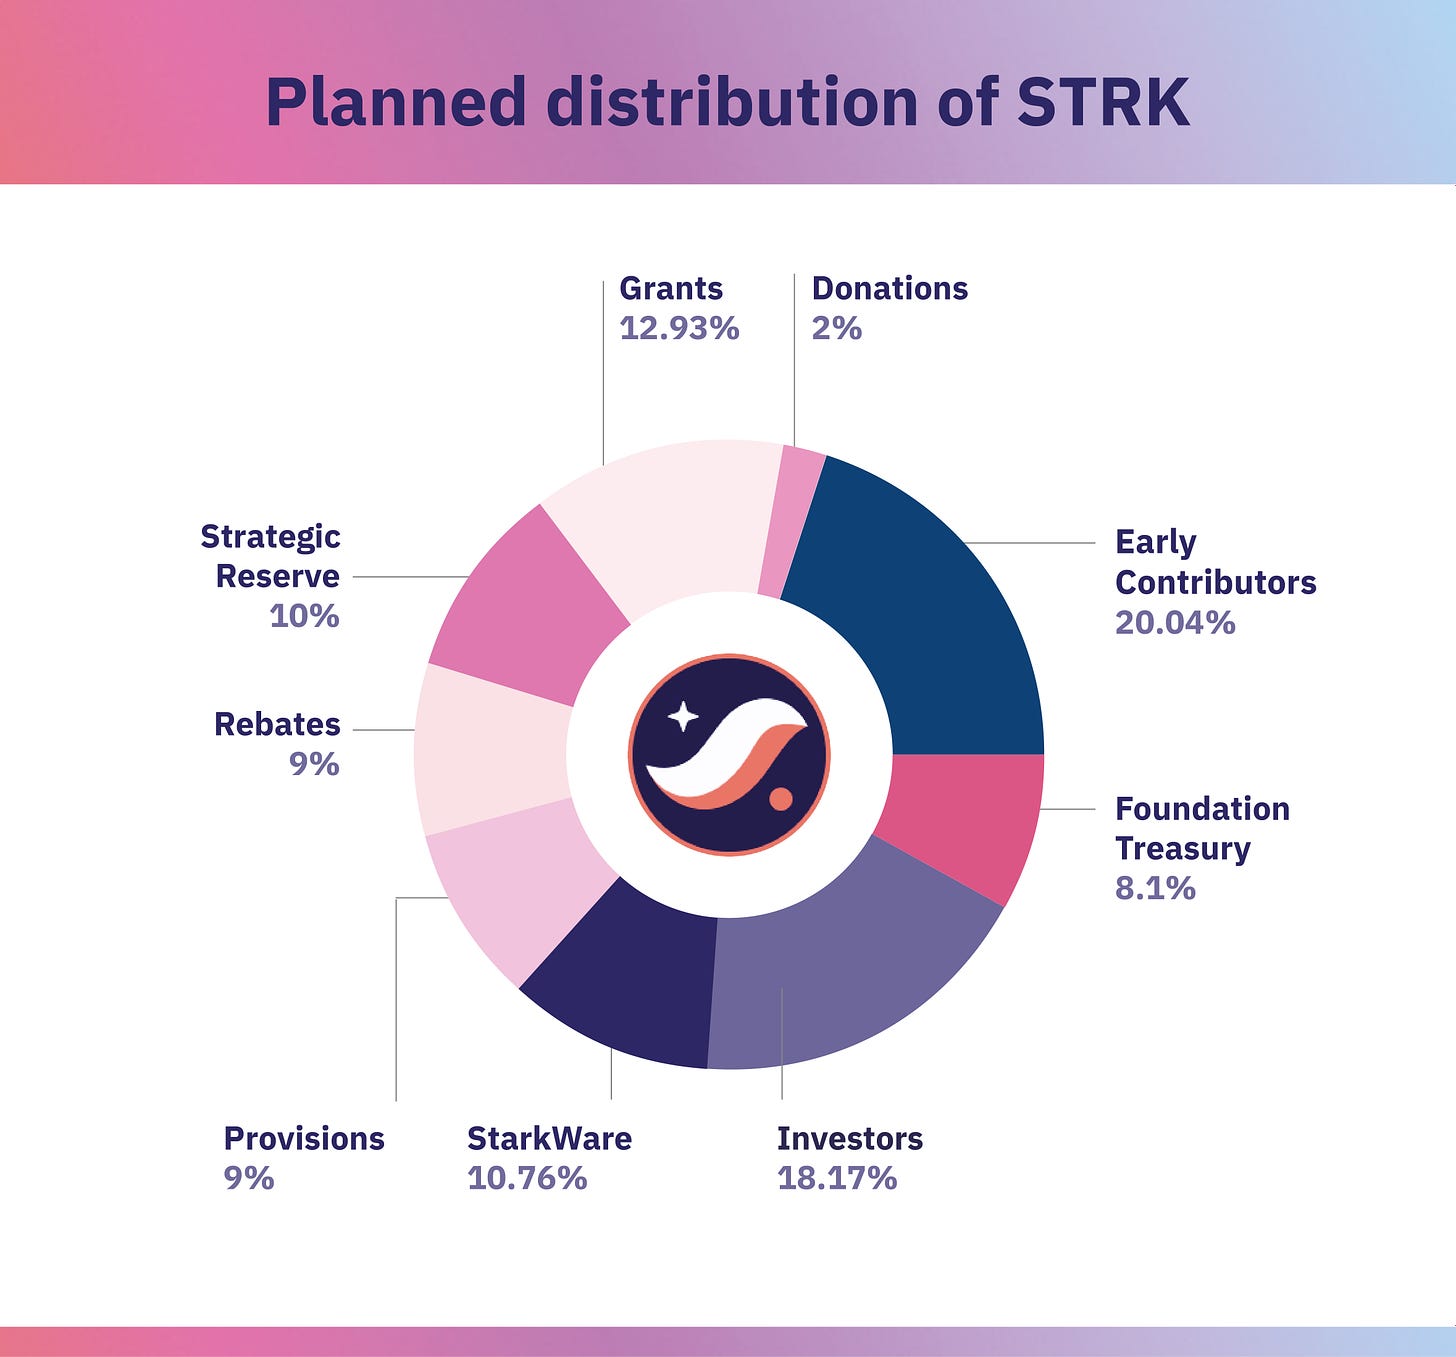 Planned distribution of STRK